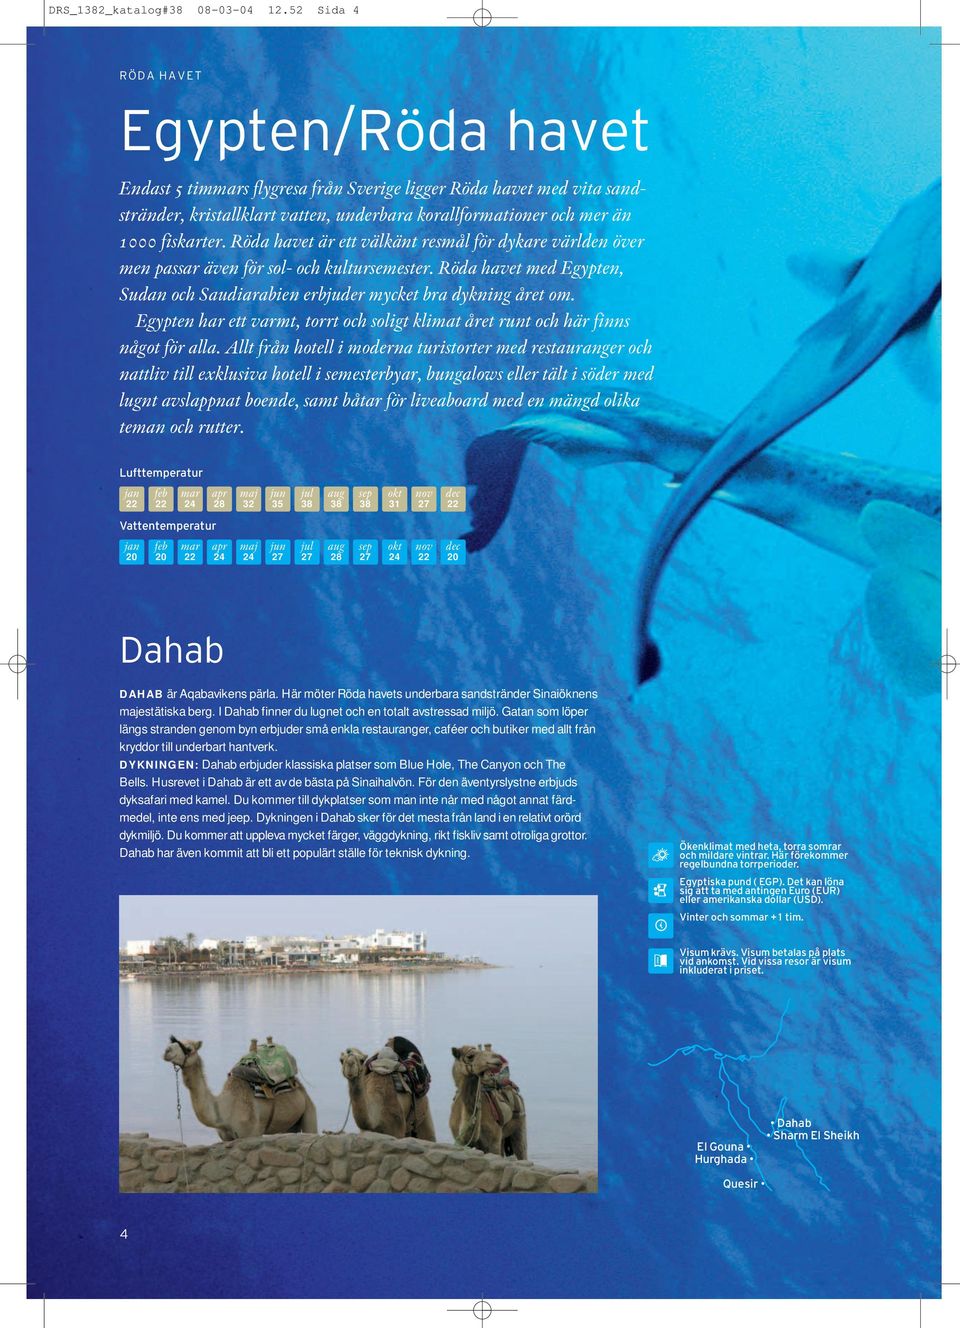 Röda havet är ett välkänt resmål för dykare världen över men passar även för sol- och kultursemester. Röda havet med Egypten, Sudan och Saudiarabien erbjuder mycket bra dykning året om.